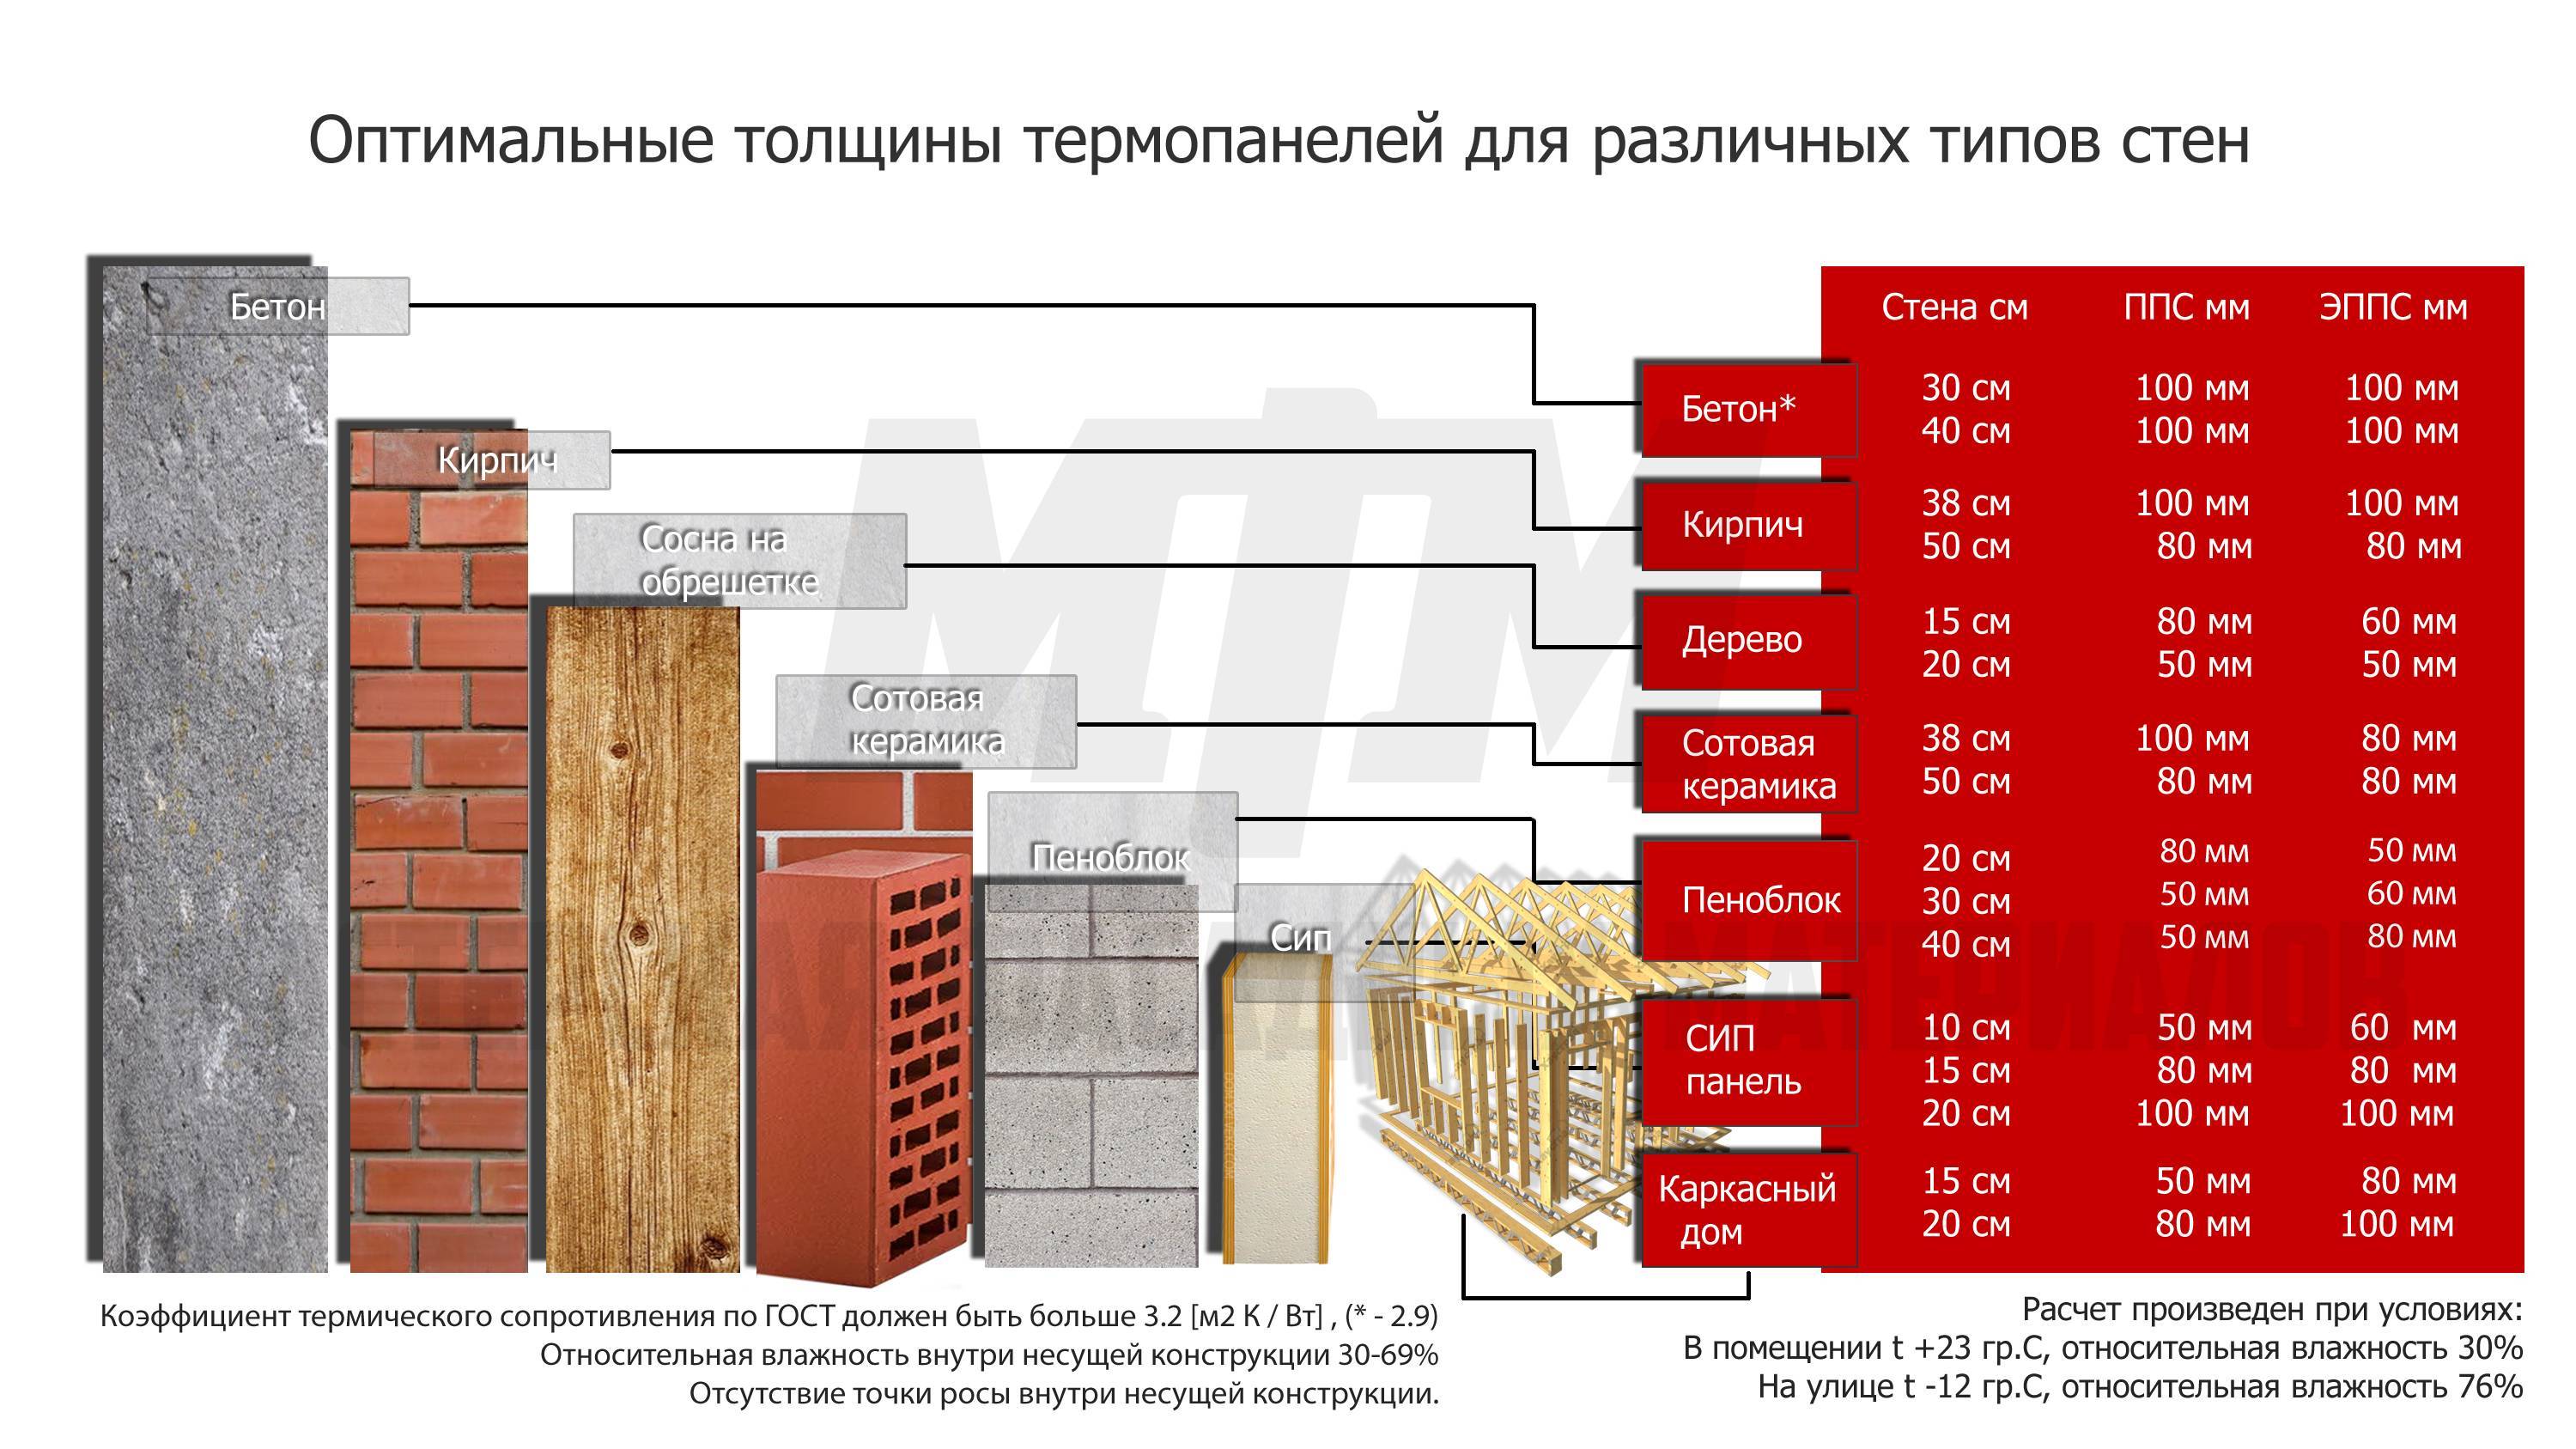 Идеальный дом: теплопроводность строительных материалов (таблица)